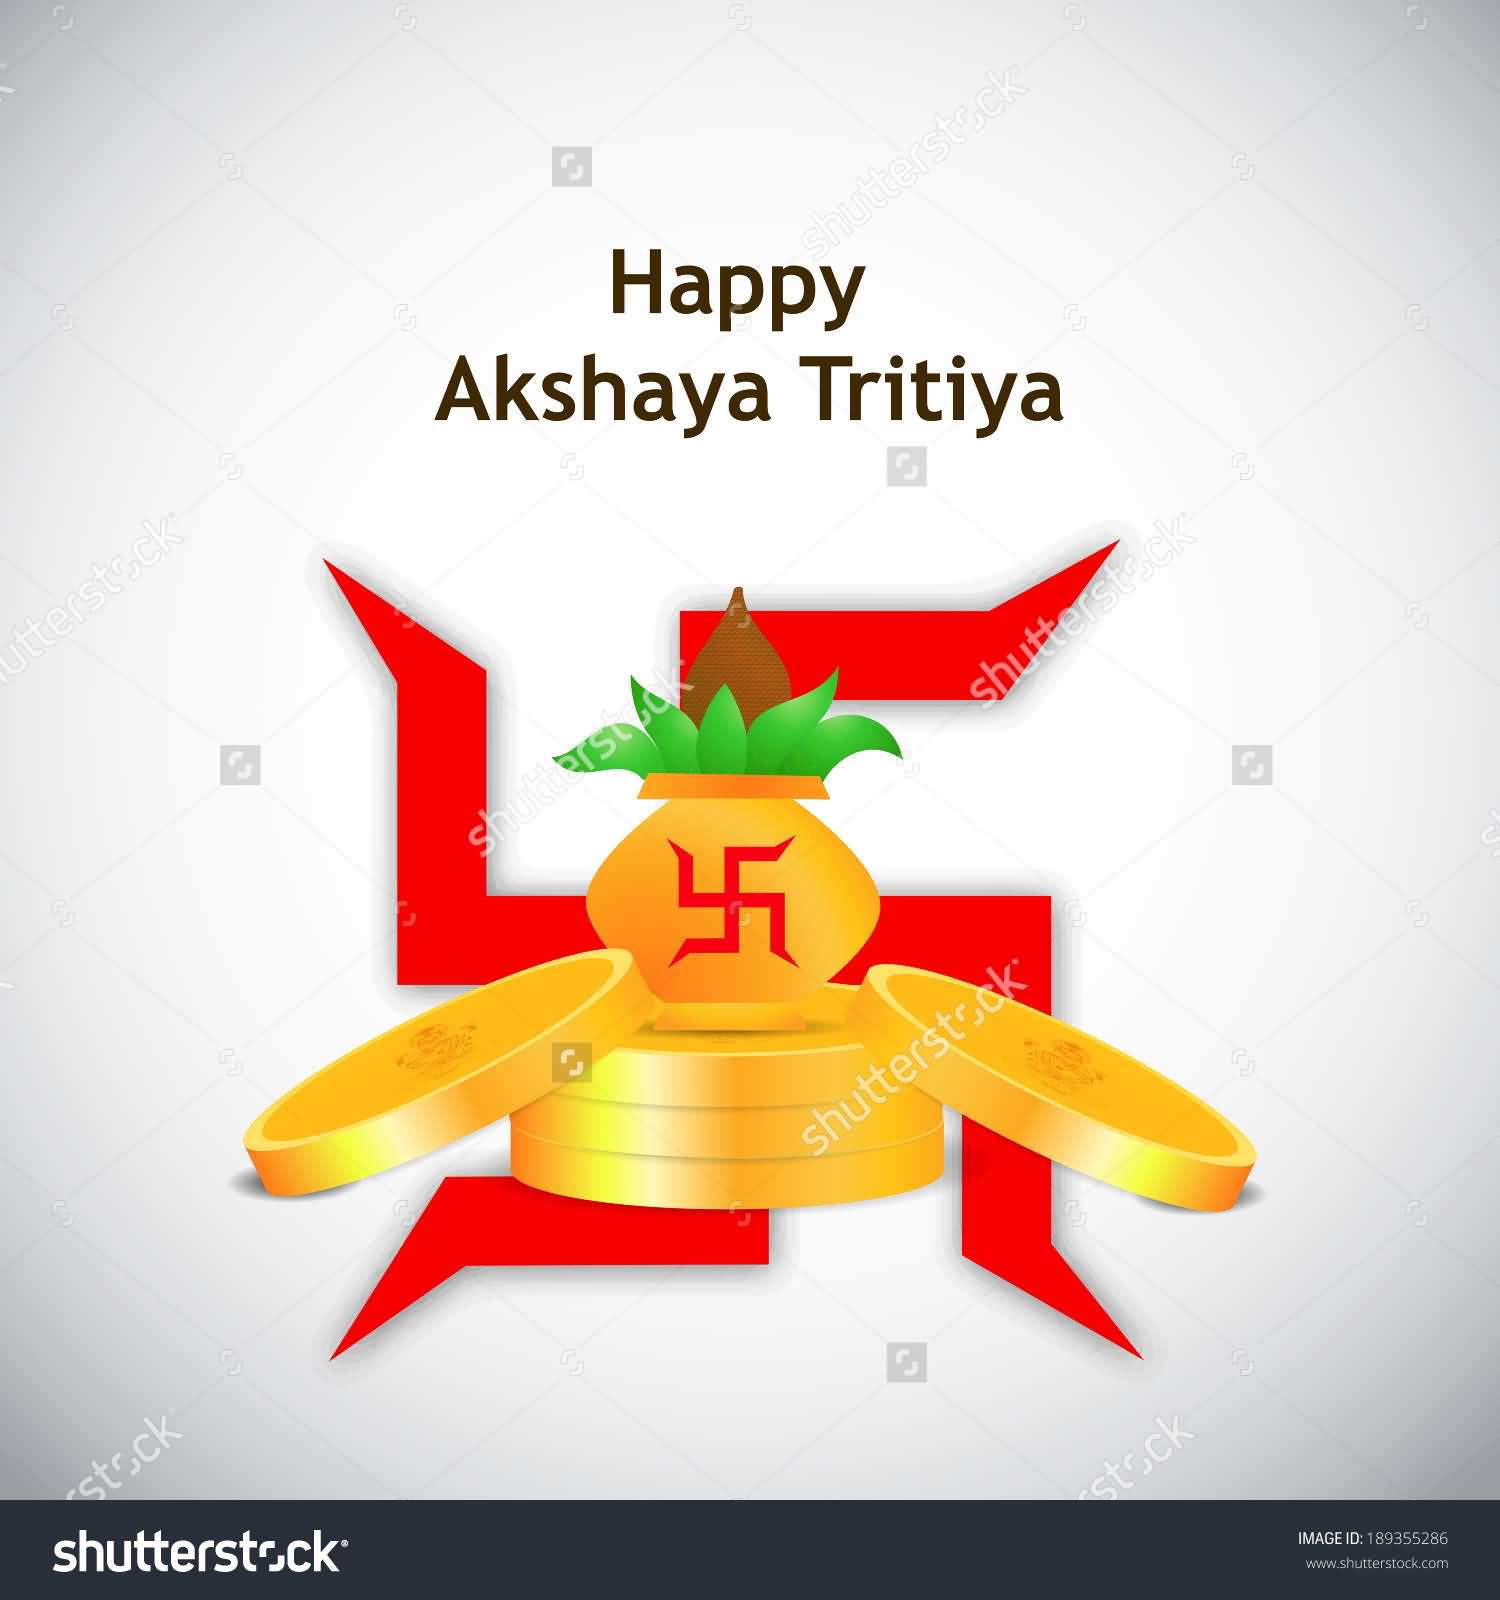 Happy Akshaya Tritiya Golden Coins, Kalash And Swastik Symbol Isolated On White Background